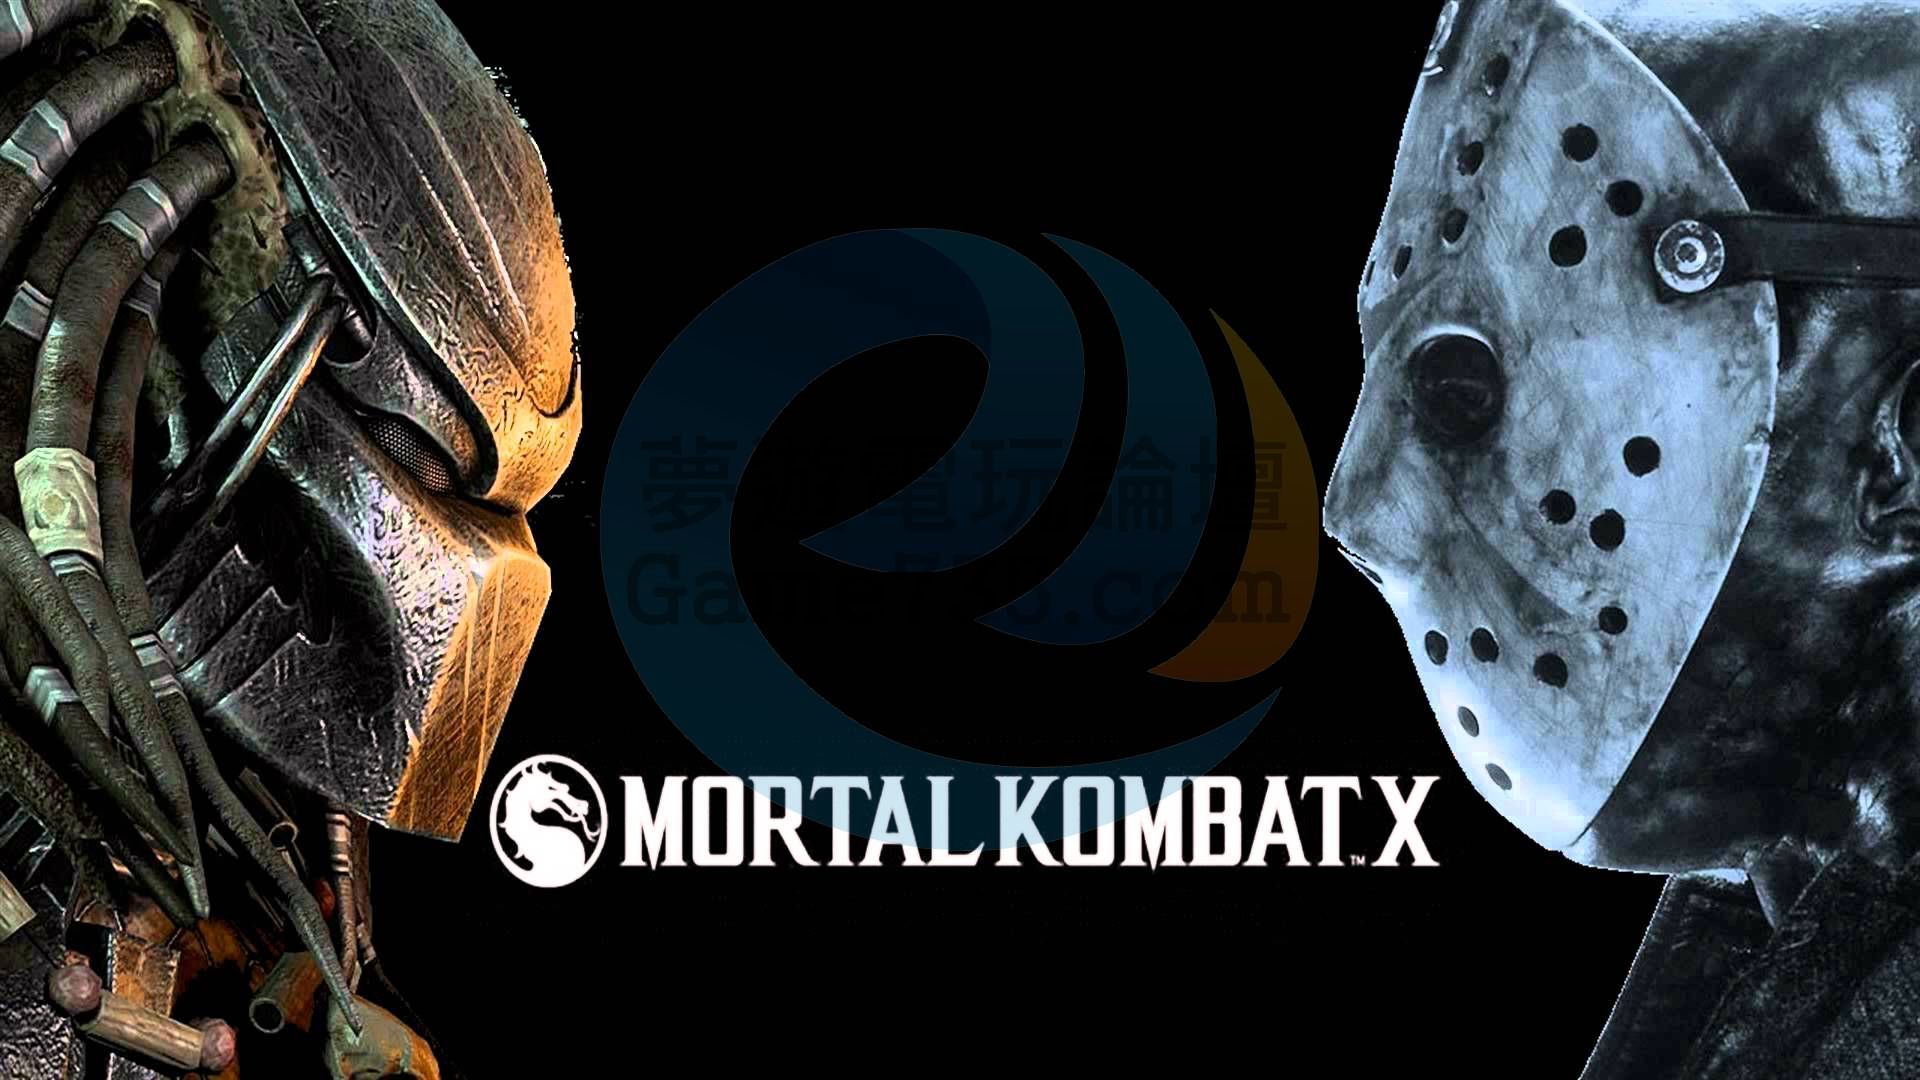 Image-for-Predator-in-Mortal-Kombat-X.jpg